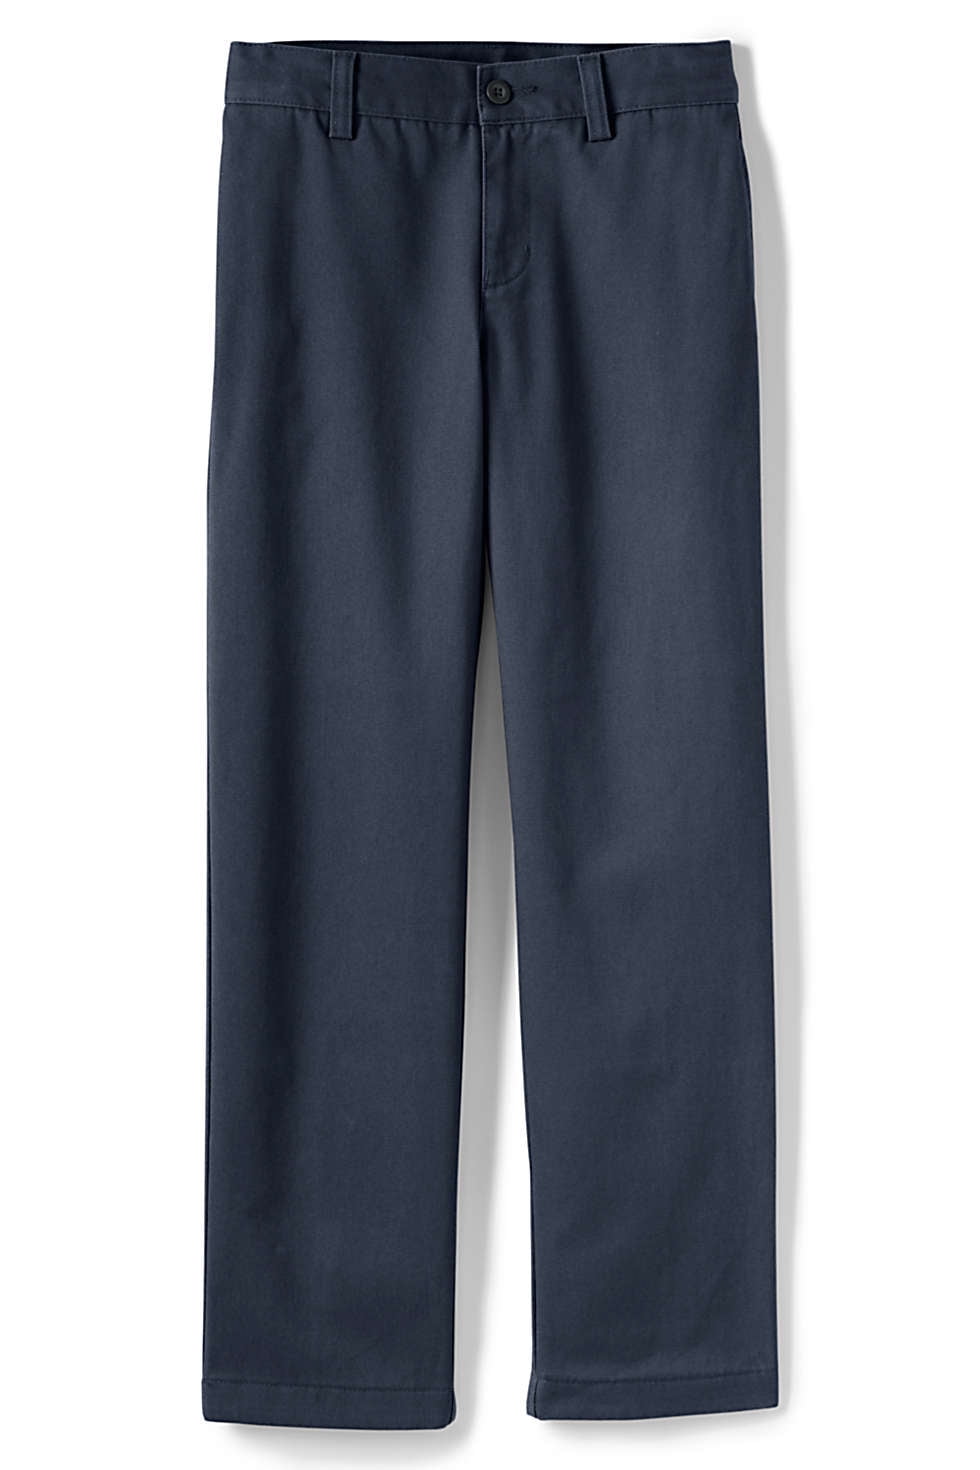 Khaki 31" Inseam Lands End Uniform Boys Size 20 Cotton Plain Front Chino Pant 